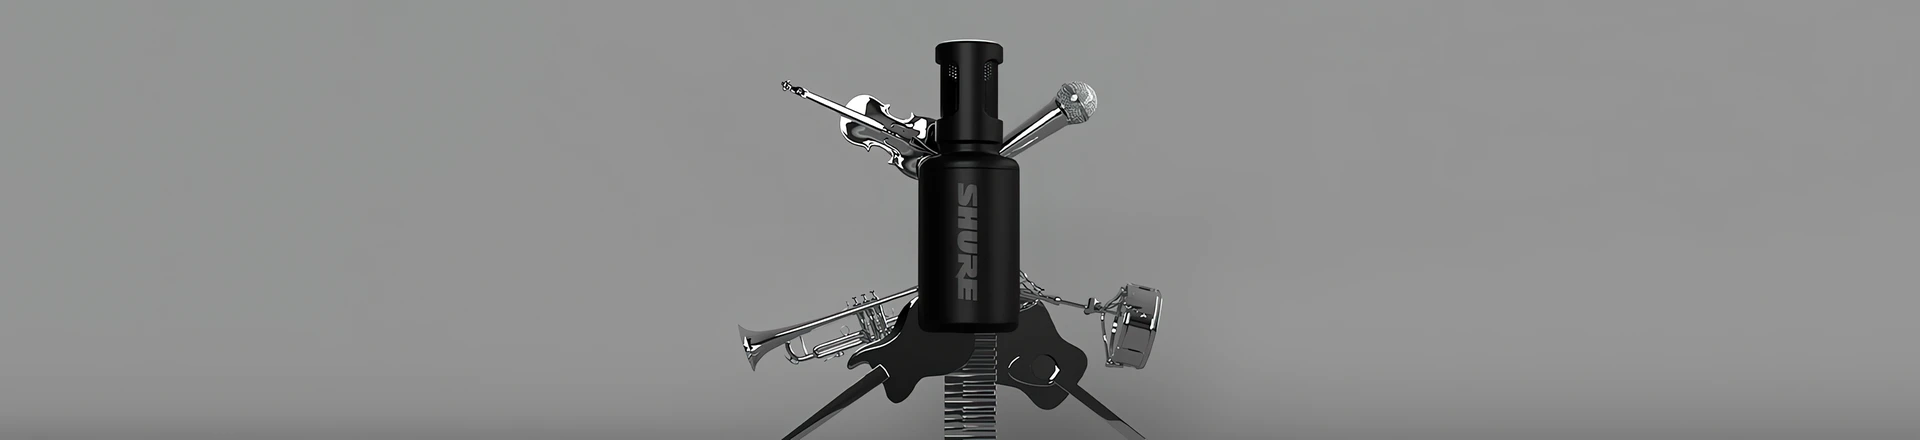 Shure MV88+ Stereo USB - Jeden mikrofon do wszystkiego!